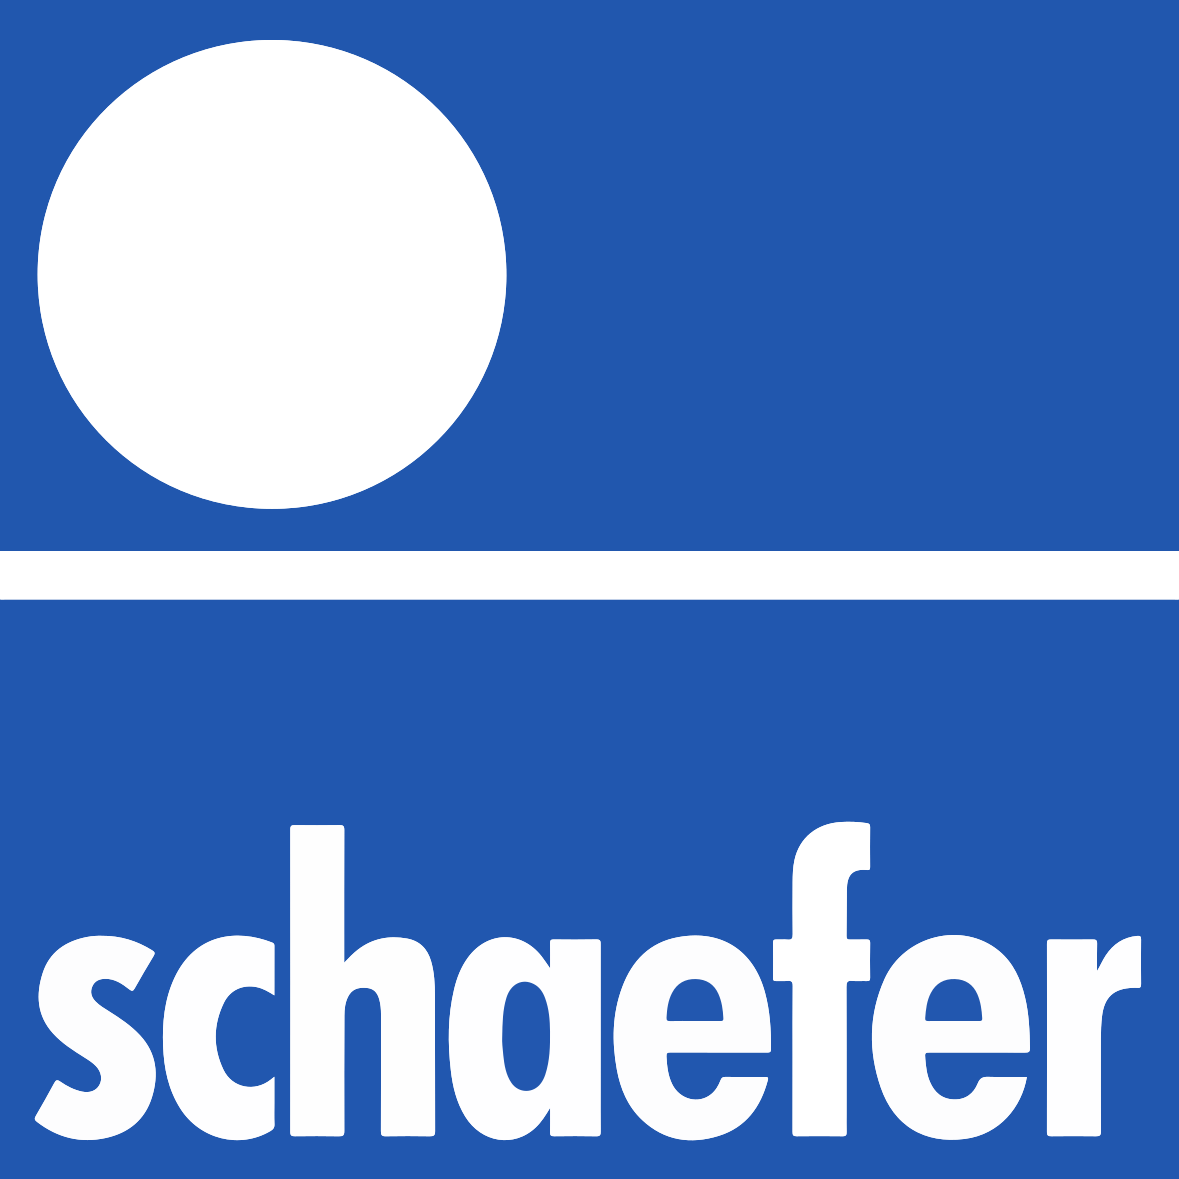 SSchafer